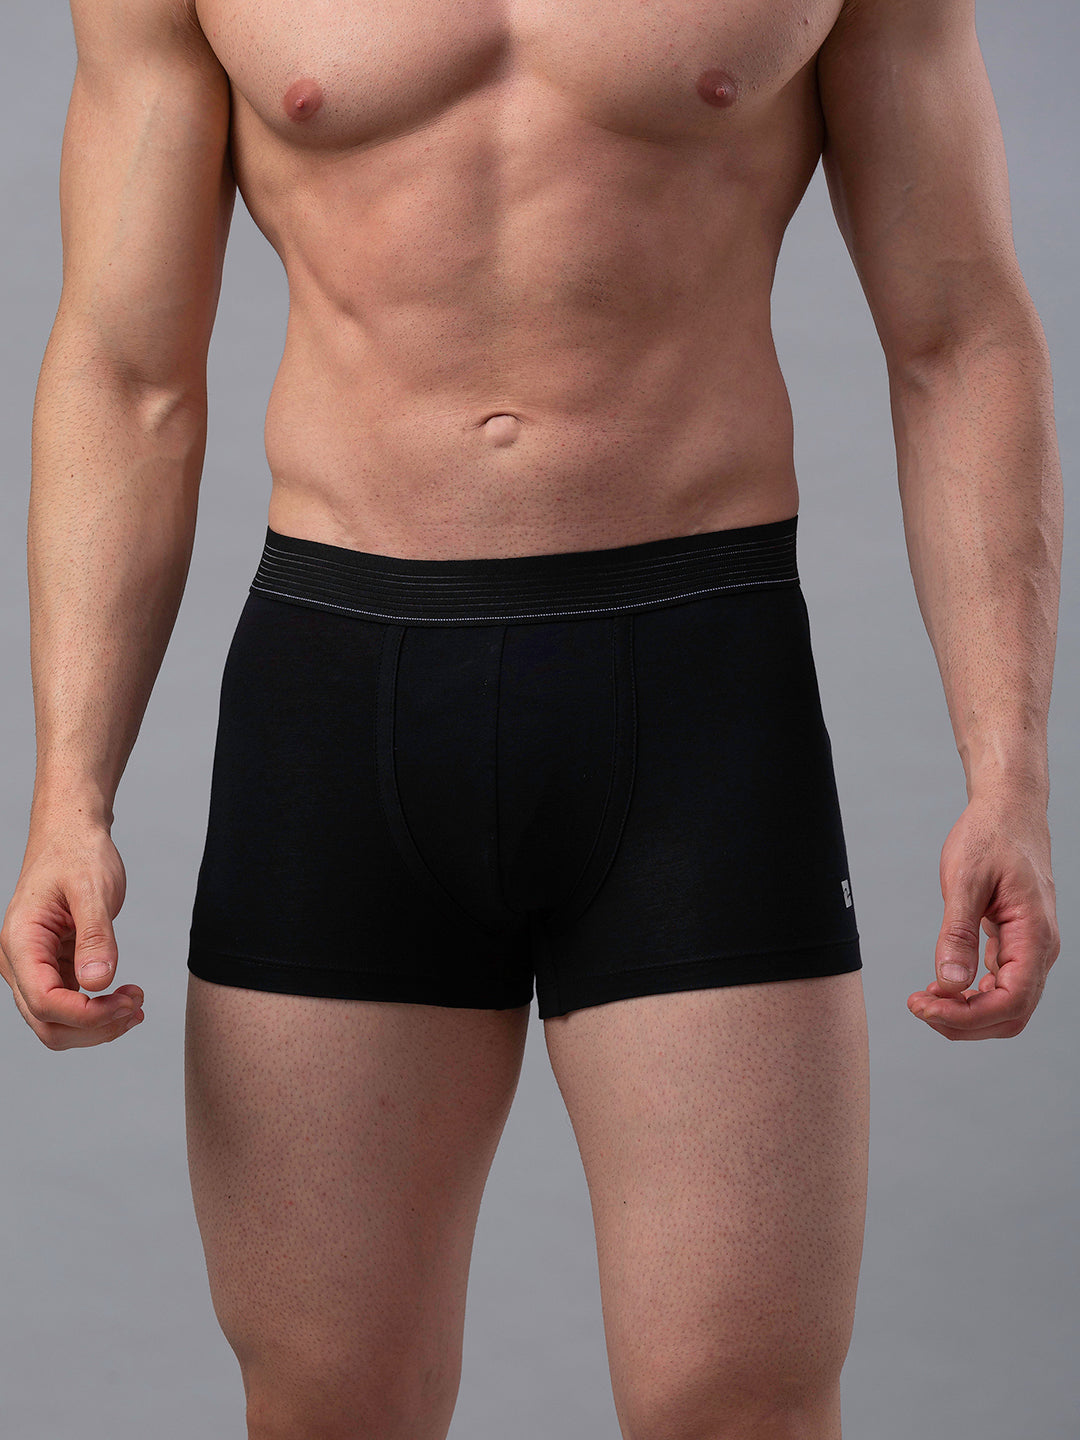 Men Premium Black Cotton Blend Trunk - UnderJeans by Spykar